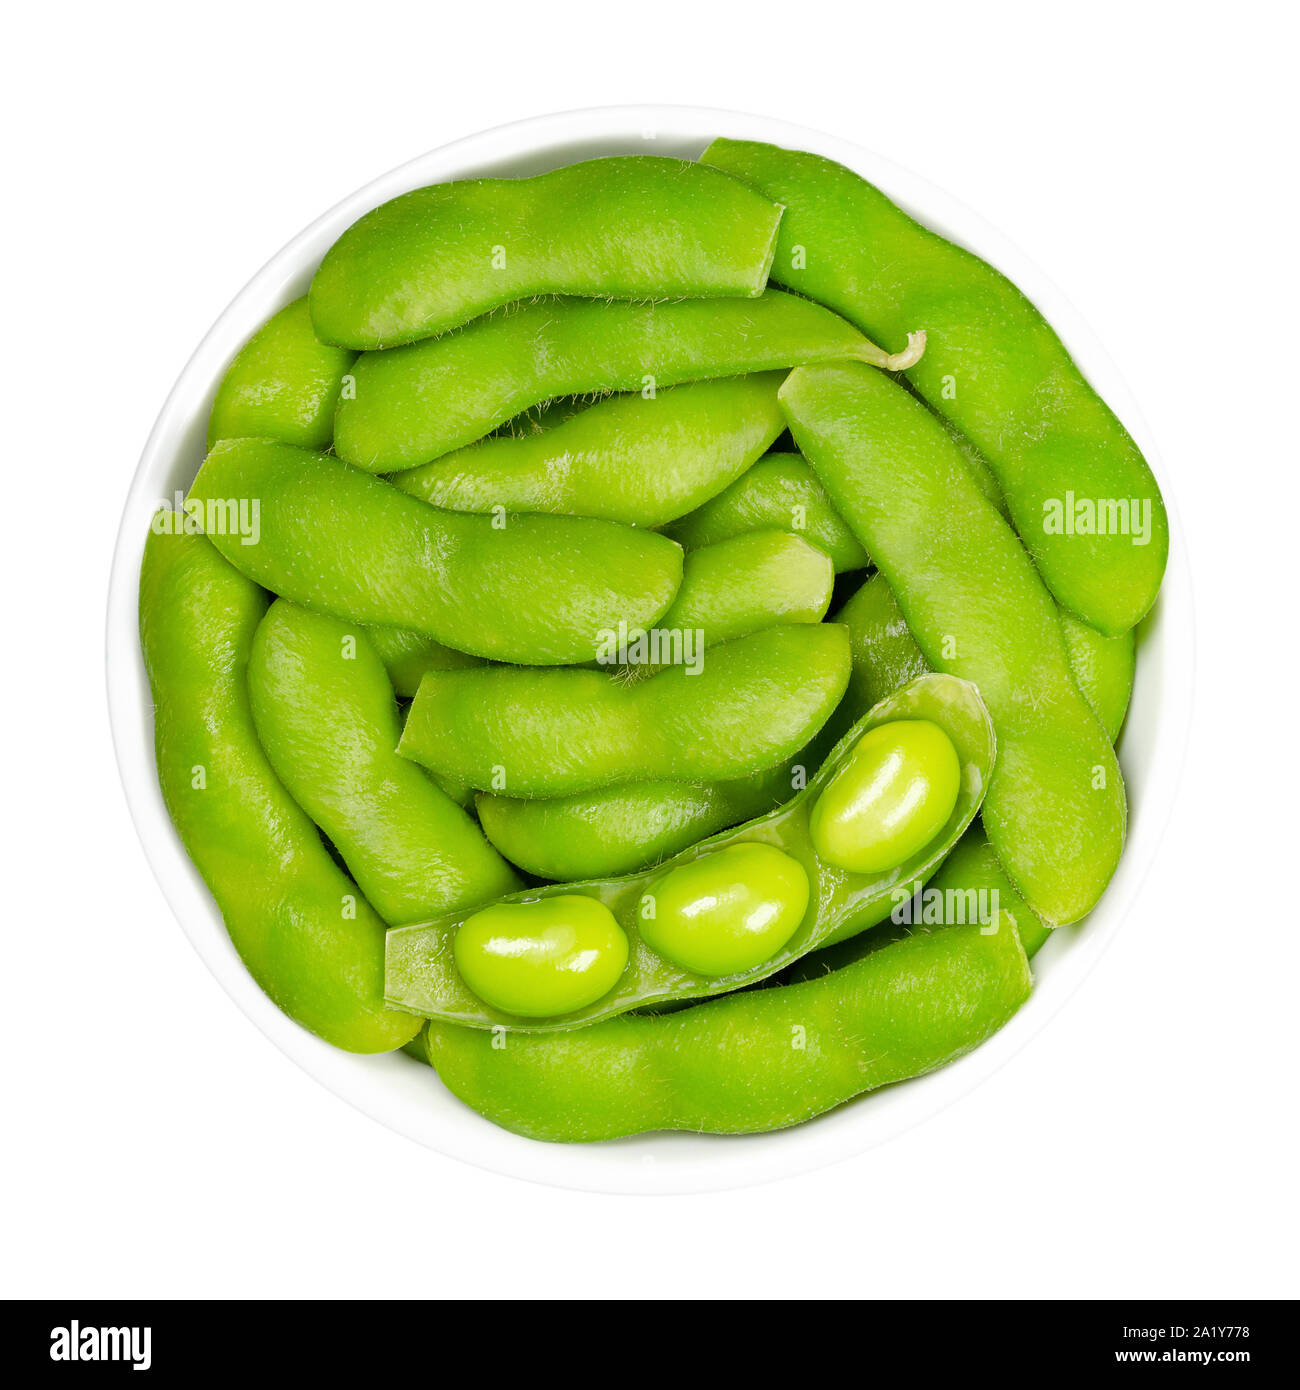 Grüne Sojabohnen in den Pod, edamame, in weiße Schüssel. Unreife Sojabohnen, auch Maodou. Glycine max, ein Legumen, essbare nach dem Kochen und reiche Proteinquelle Stockfoto